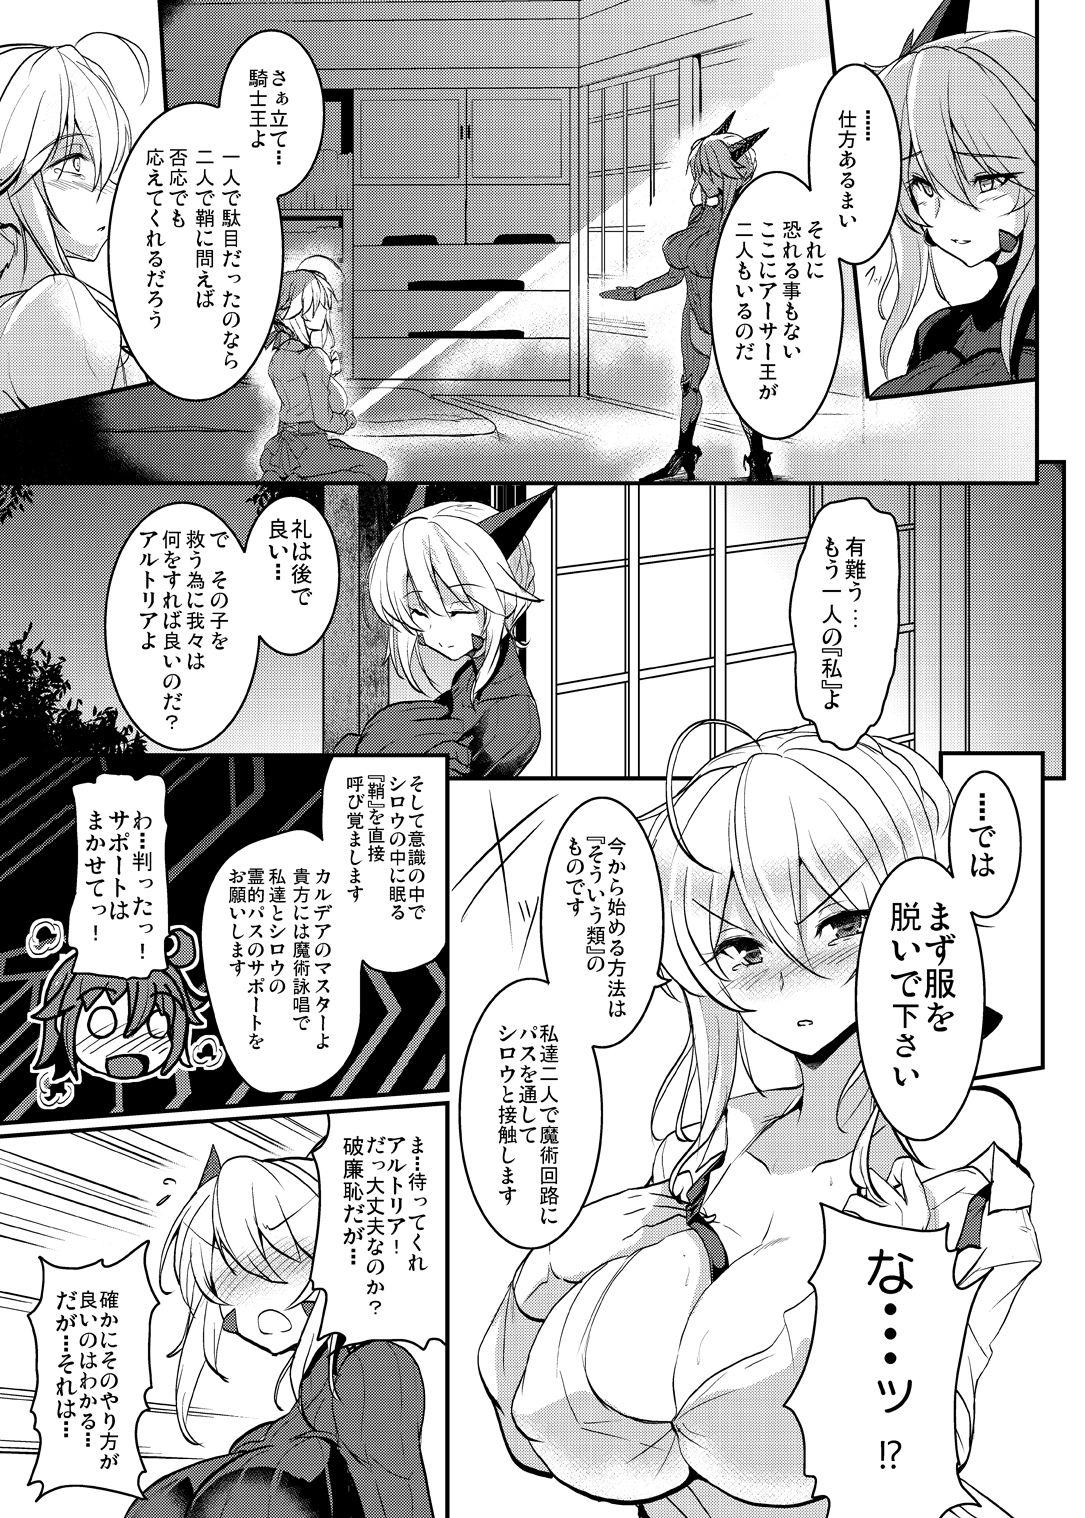 Orgia Tonari no Chichiou-sama Yonmaku - Fate grand order Uncensored - Page 11